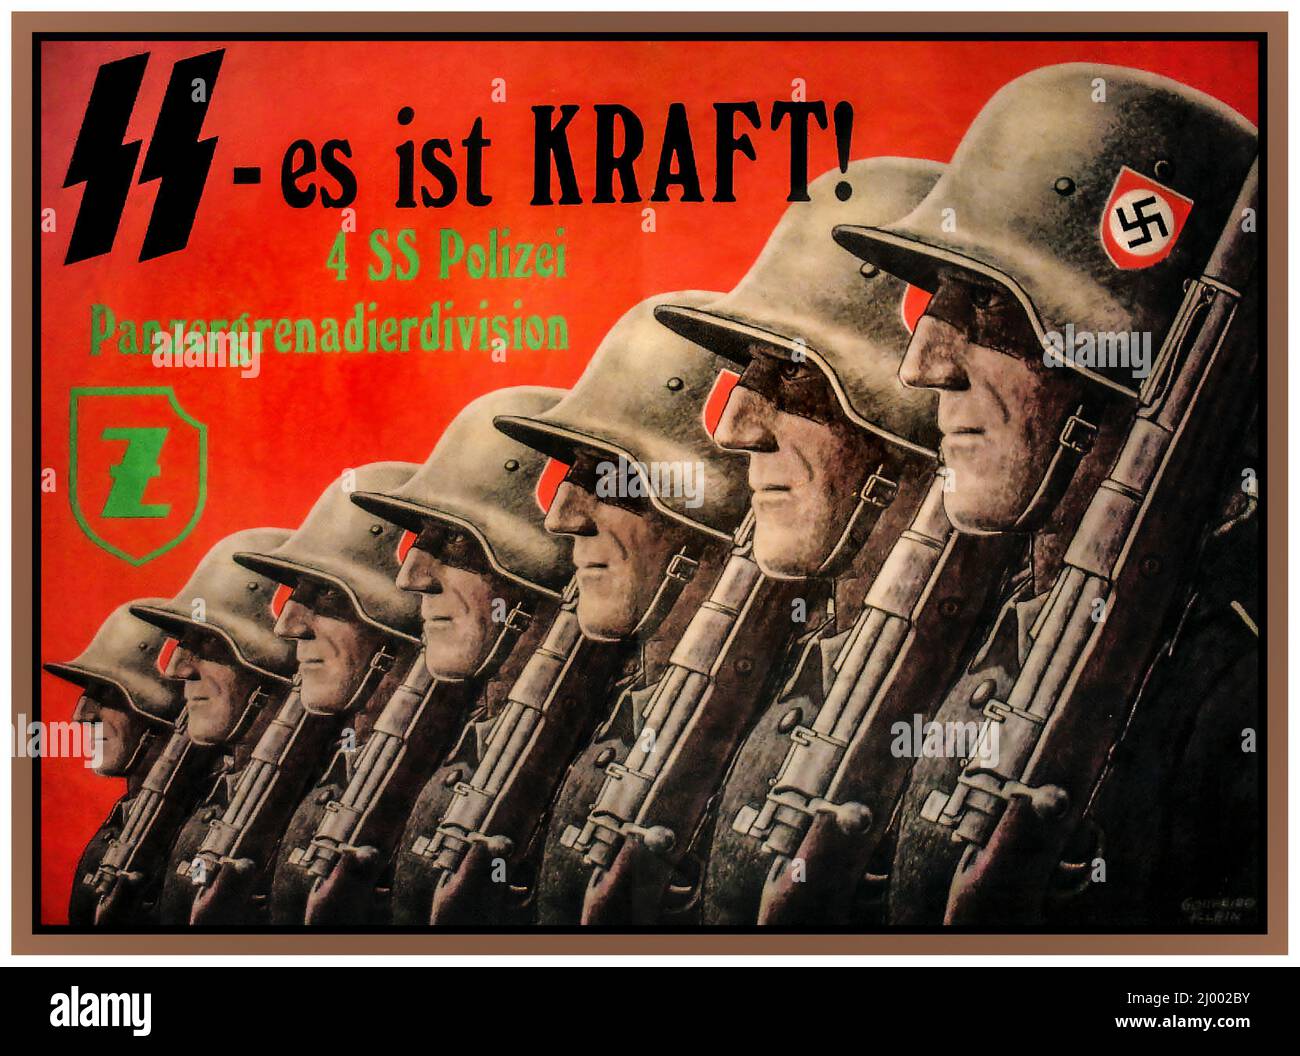 POLIZIA SS NAZISTA Vintage 1940 WW2 Propaganda nazista Poster di reclutamento per la polizia SS, 'PanzergrenadierDivision' Panzer Grenadier Division 'S es ist KRAFT !' SS è IL POTERE della Germania nazista Foto Stock